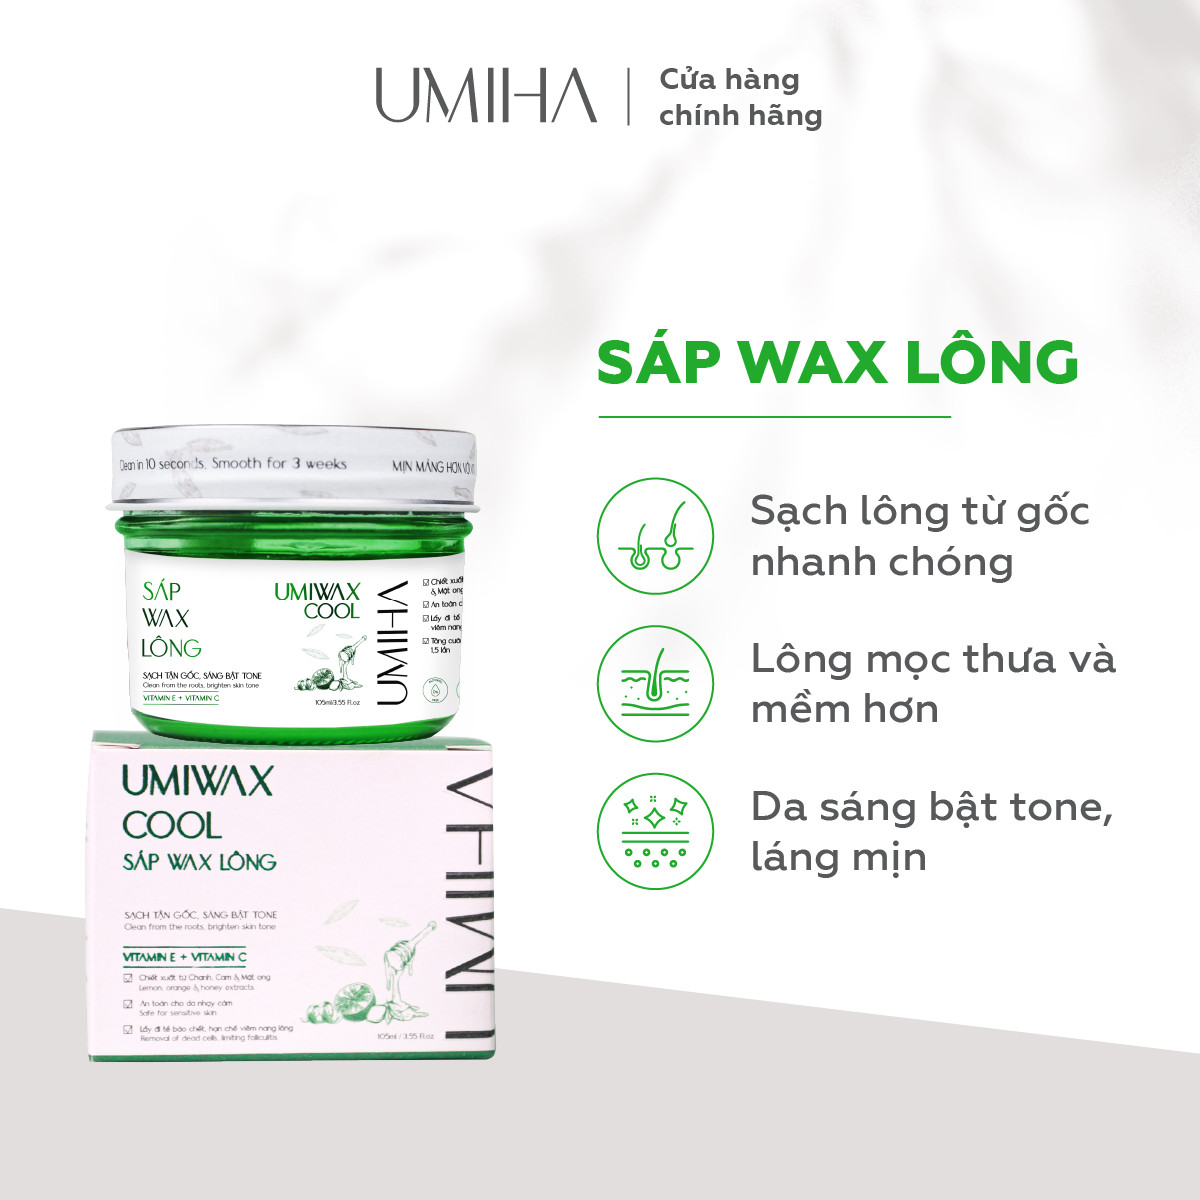 Sáp wax lông lạnh UMIHA 105ML dùng cho wax lông Nách, Chân, Tay, Body an toàn hiệu quả